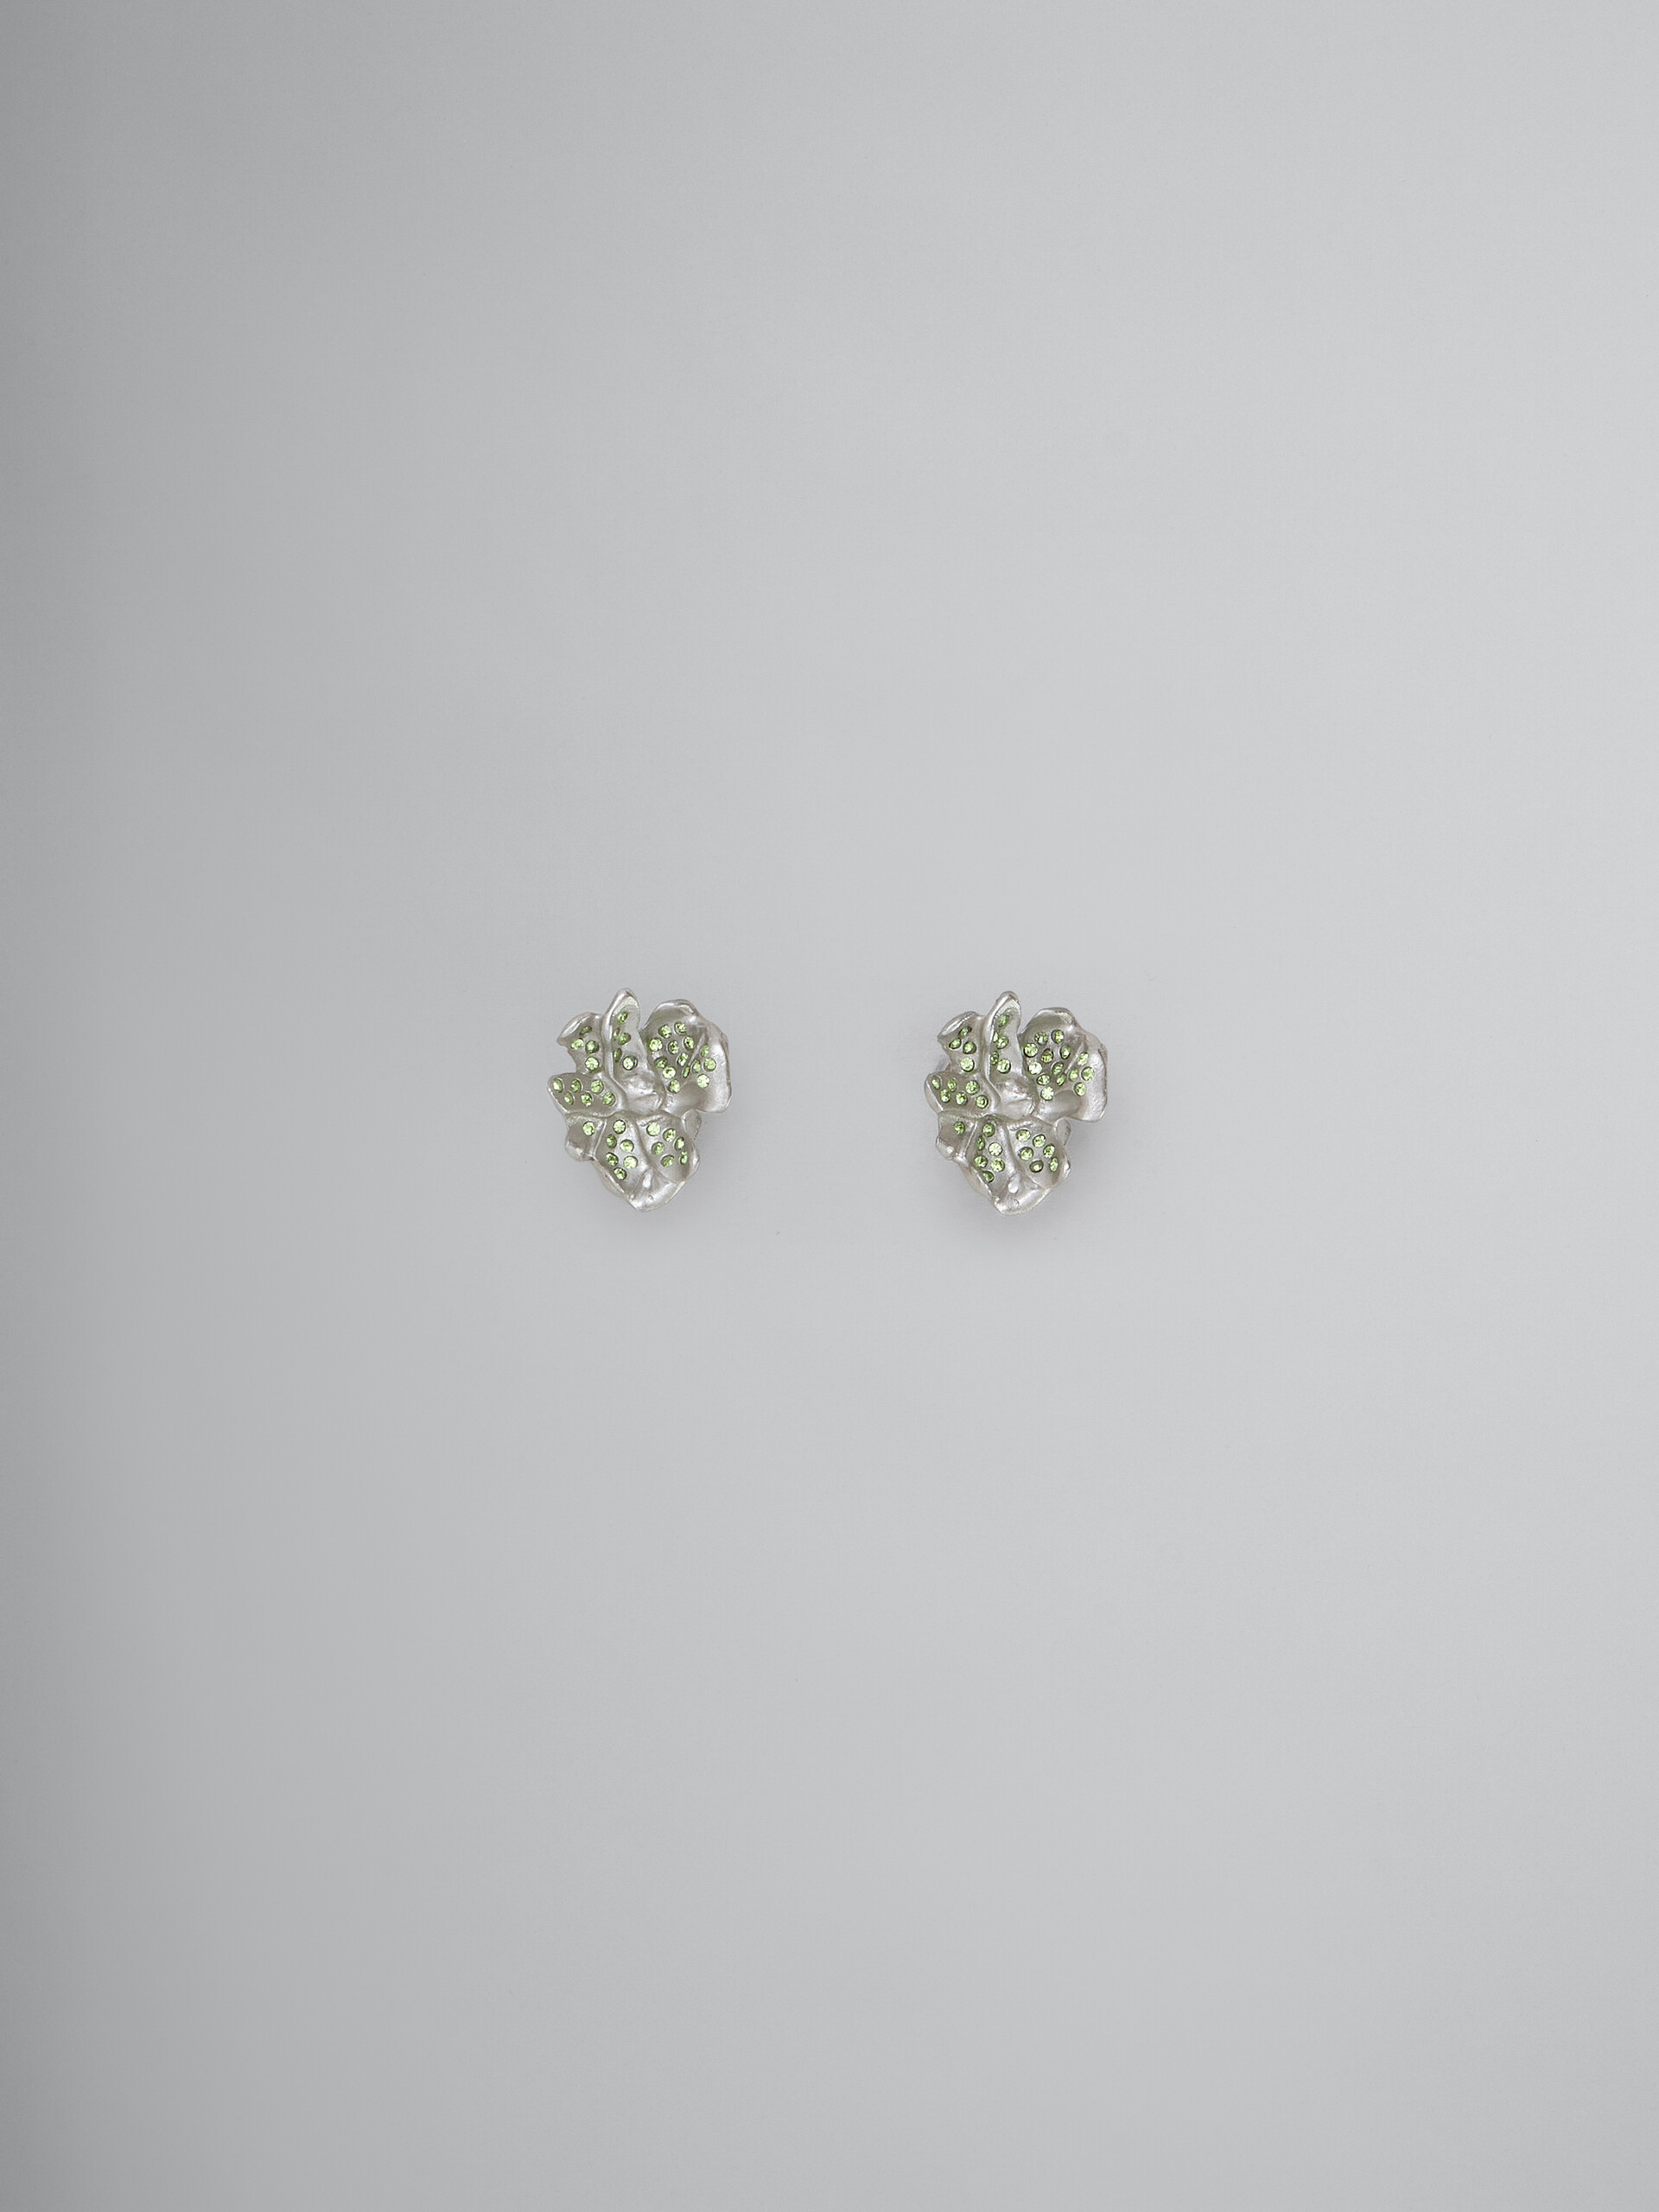 Metal flower stud earrings with blue crystals - Earrings - Image 1